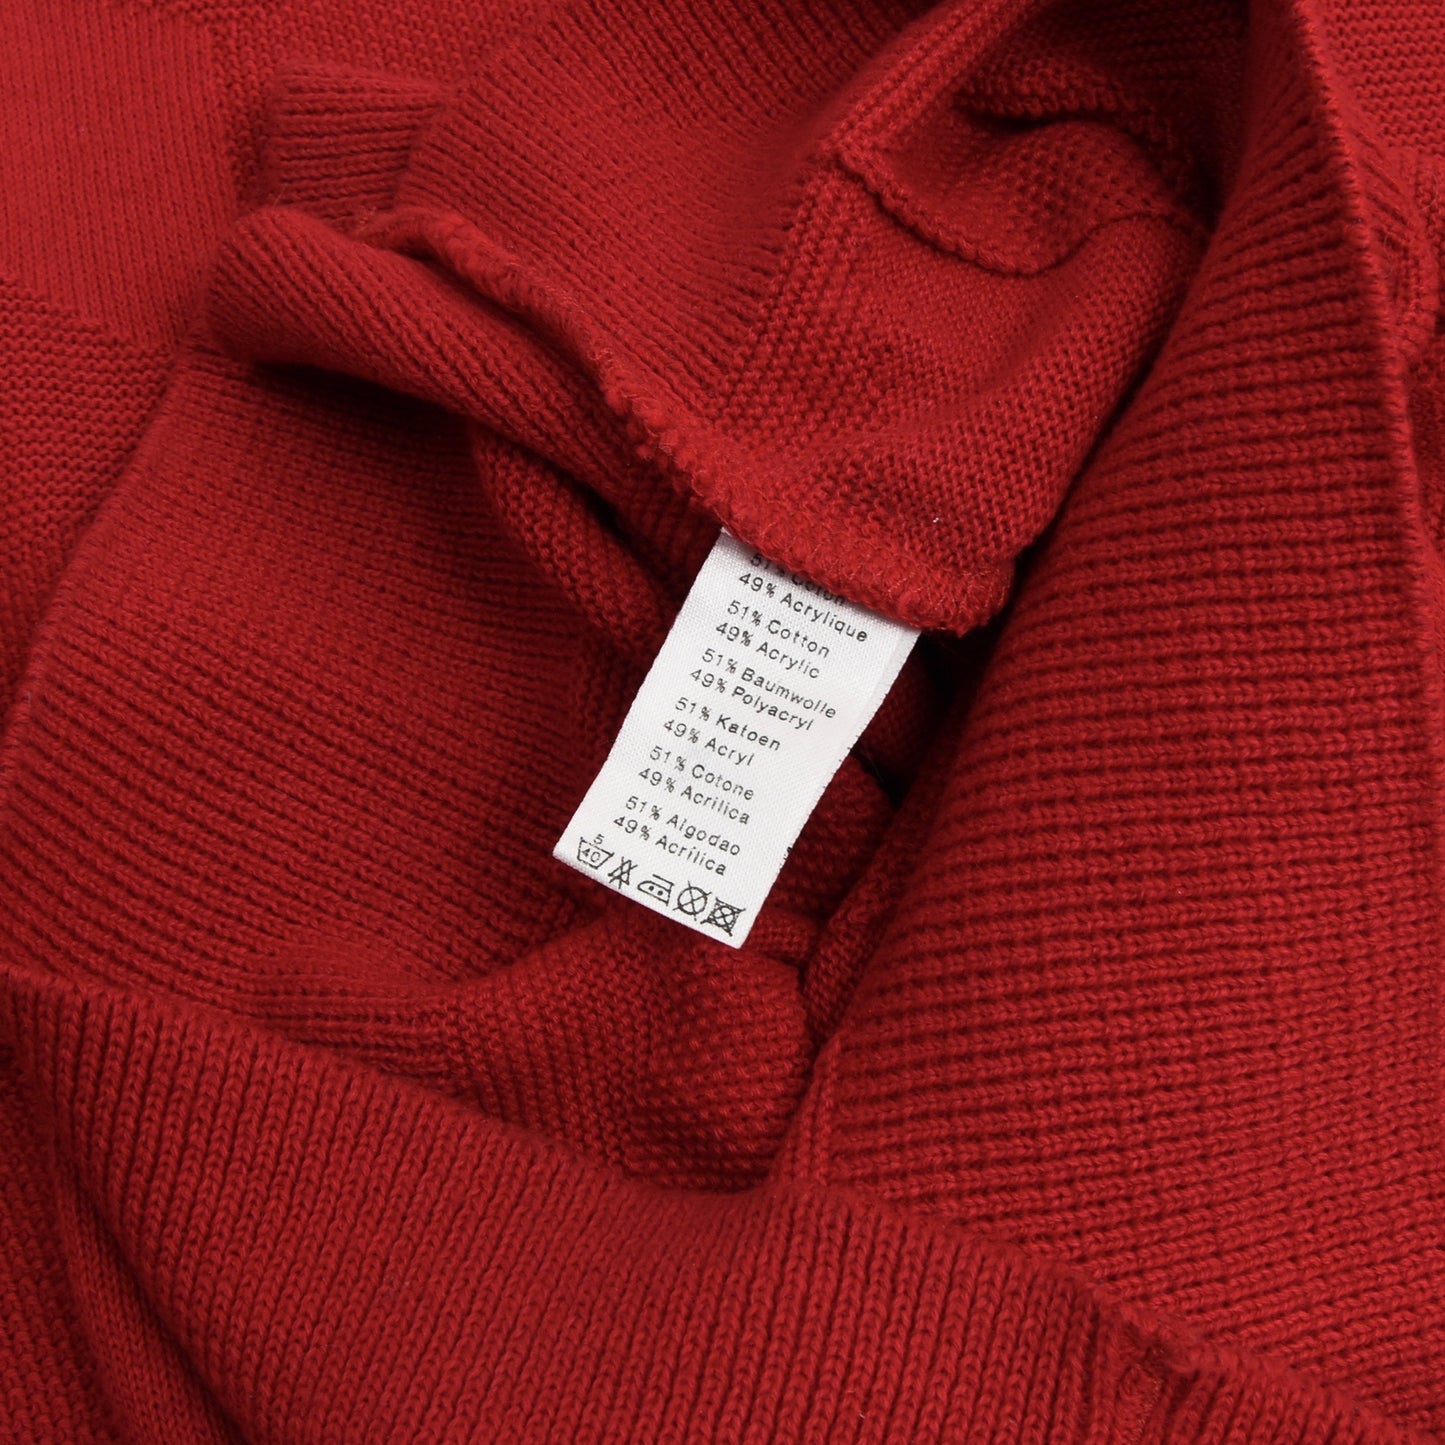 2x Vintage Lacoste Pullover Größe 6 - Rot & Grün